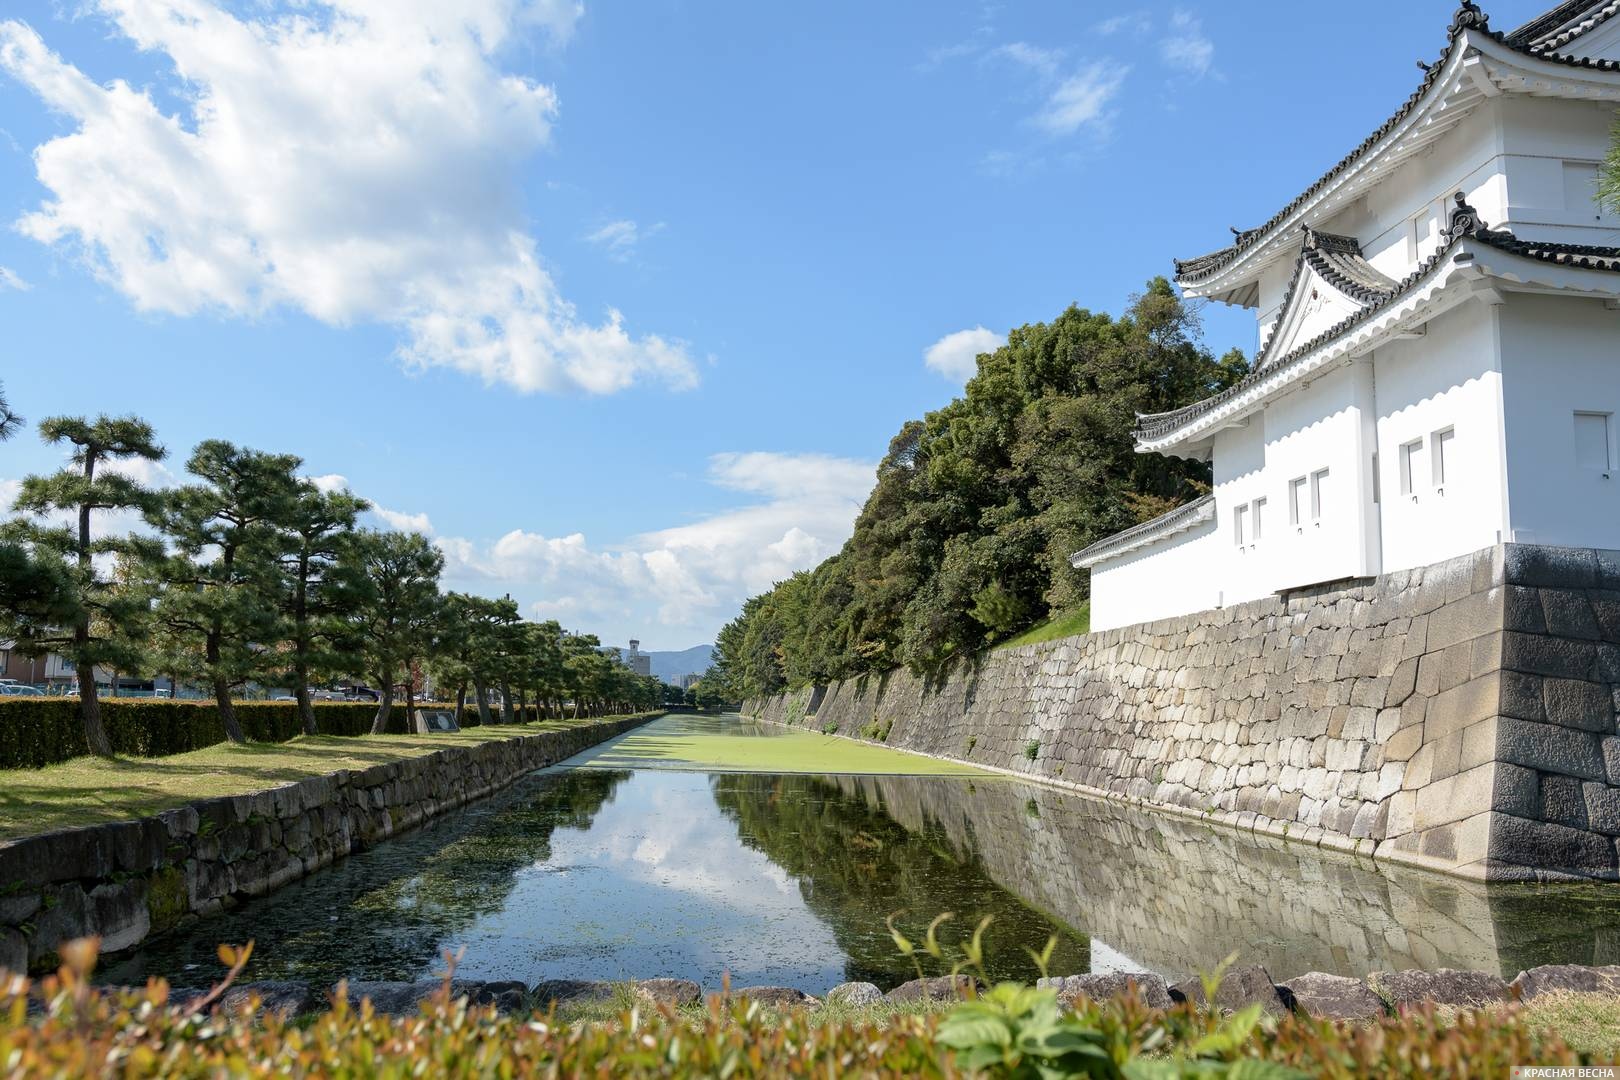 Ров замка Нидзё, Киото, Япония 03.11.2016